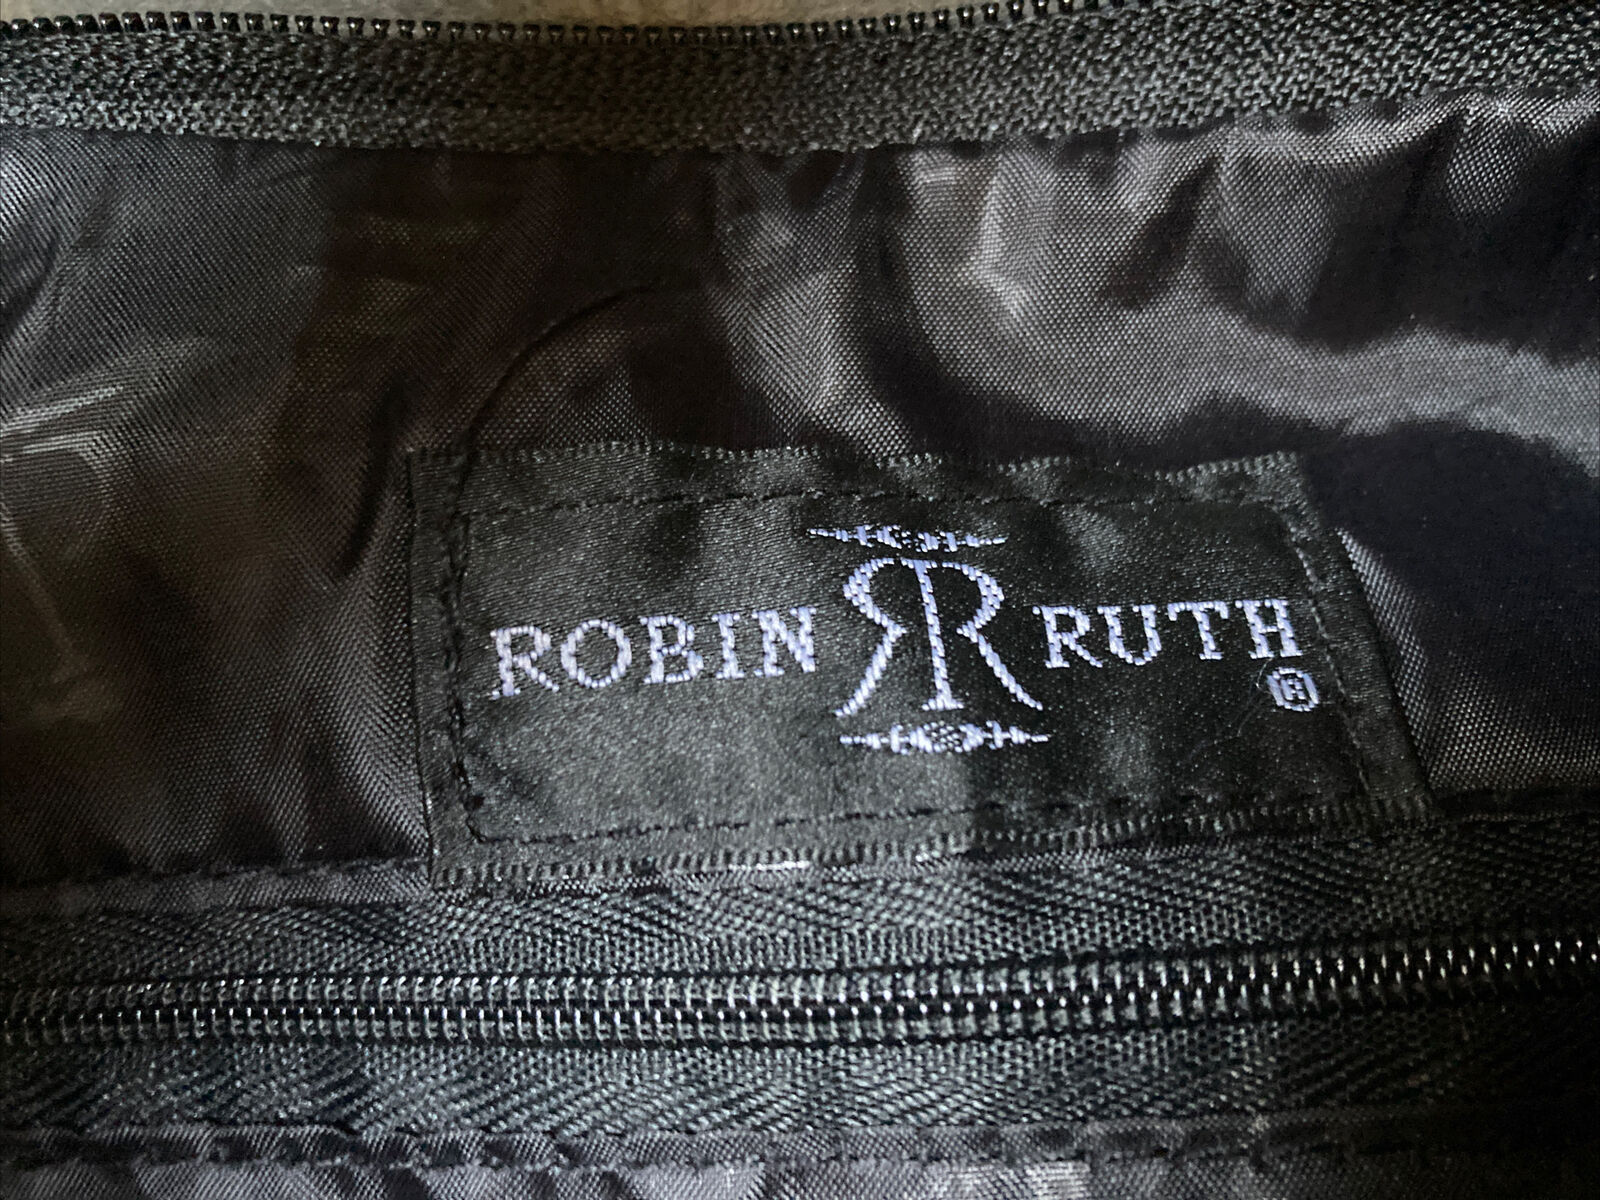 ROBIN RUTH “Germany” Large Hobo Shoulder Bag Canv… - image 7